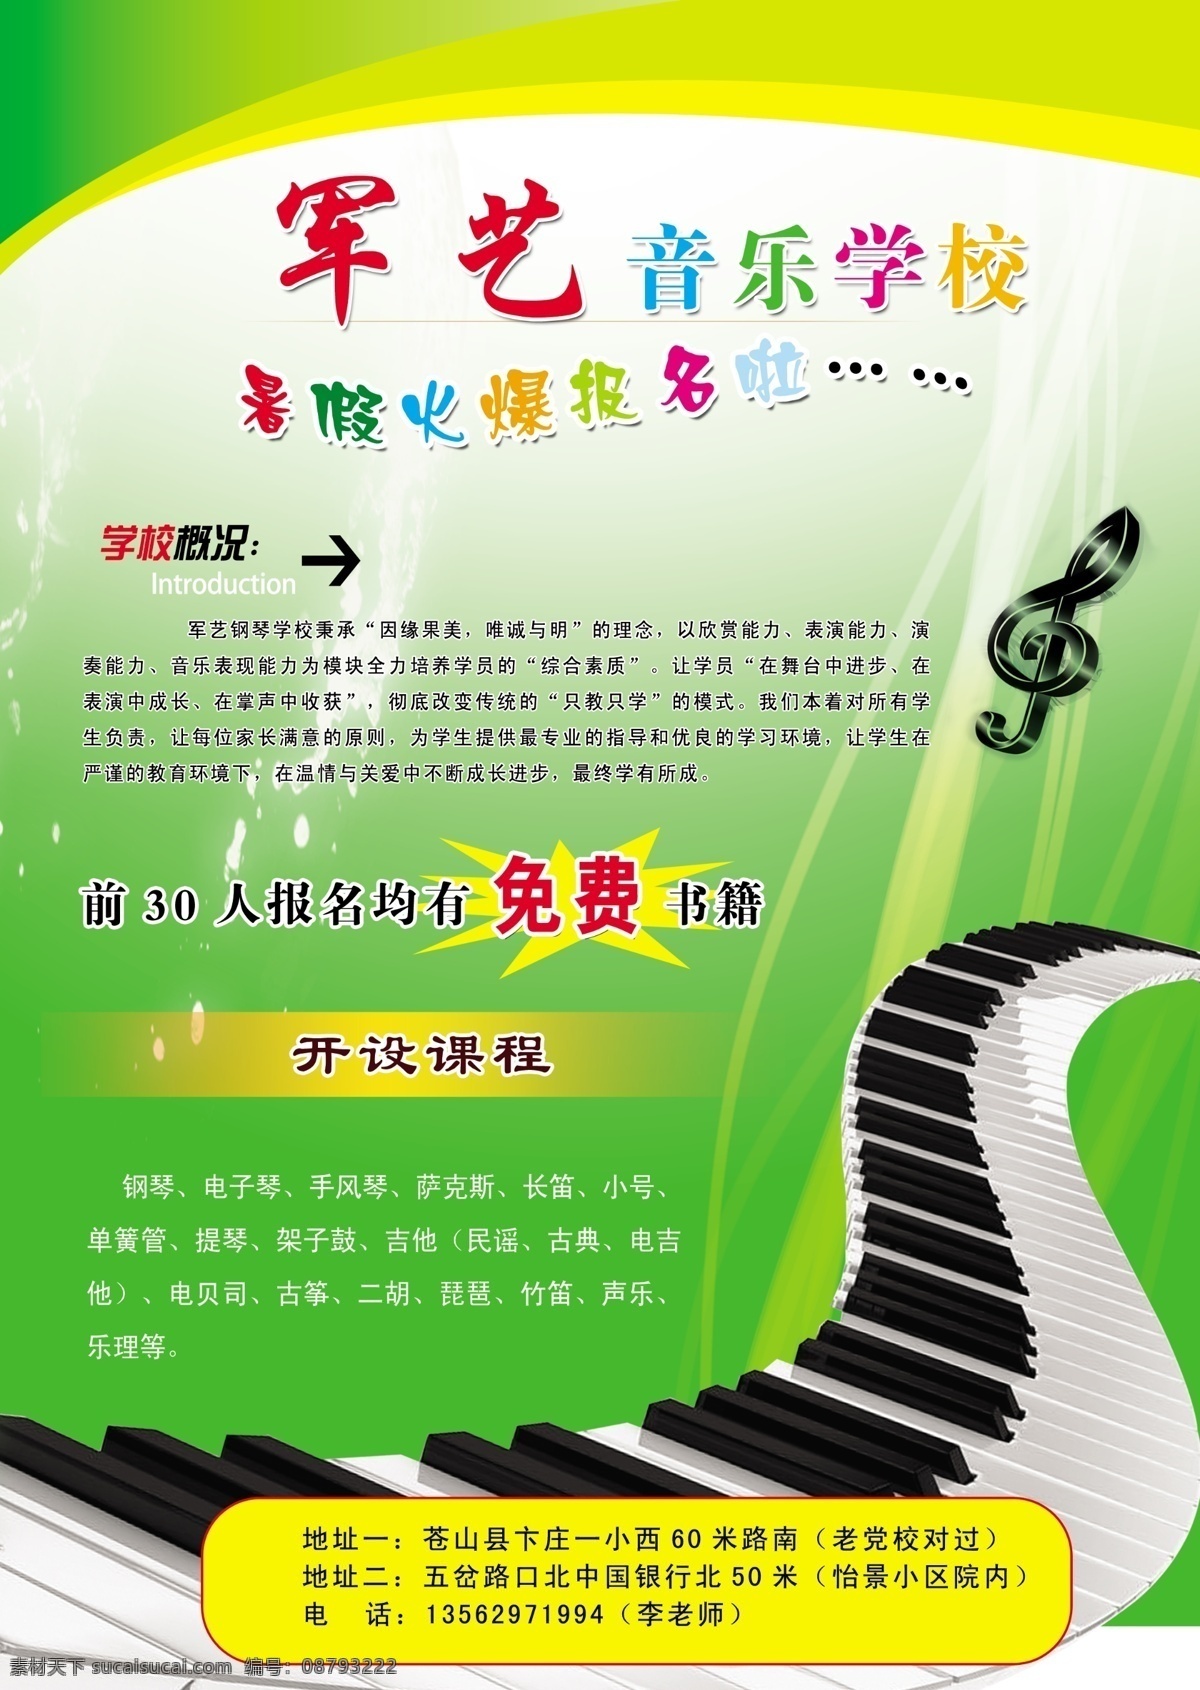 钢琴招生简章 钢琴 钢琴招生 钢琴学校 暑假班 绿色版本 音乐 dm宣传单 广告设计模板 源文件